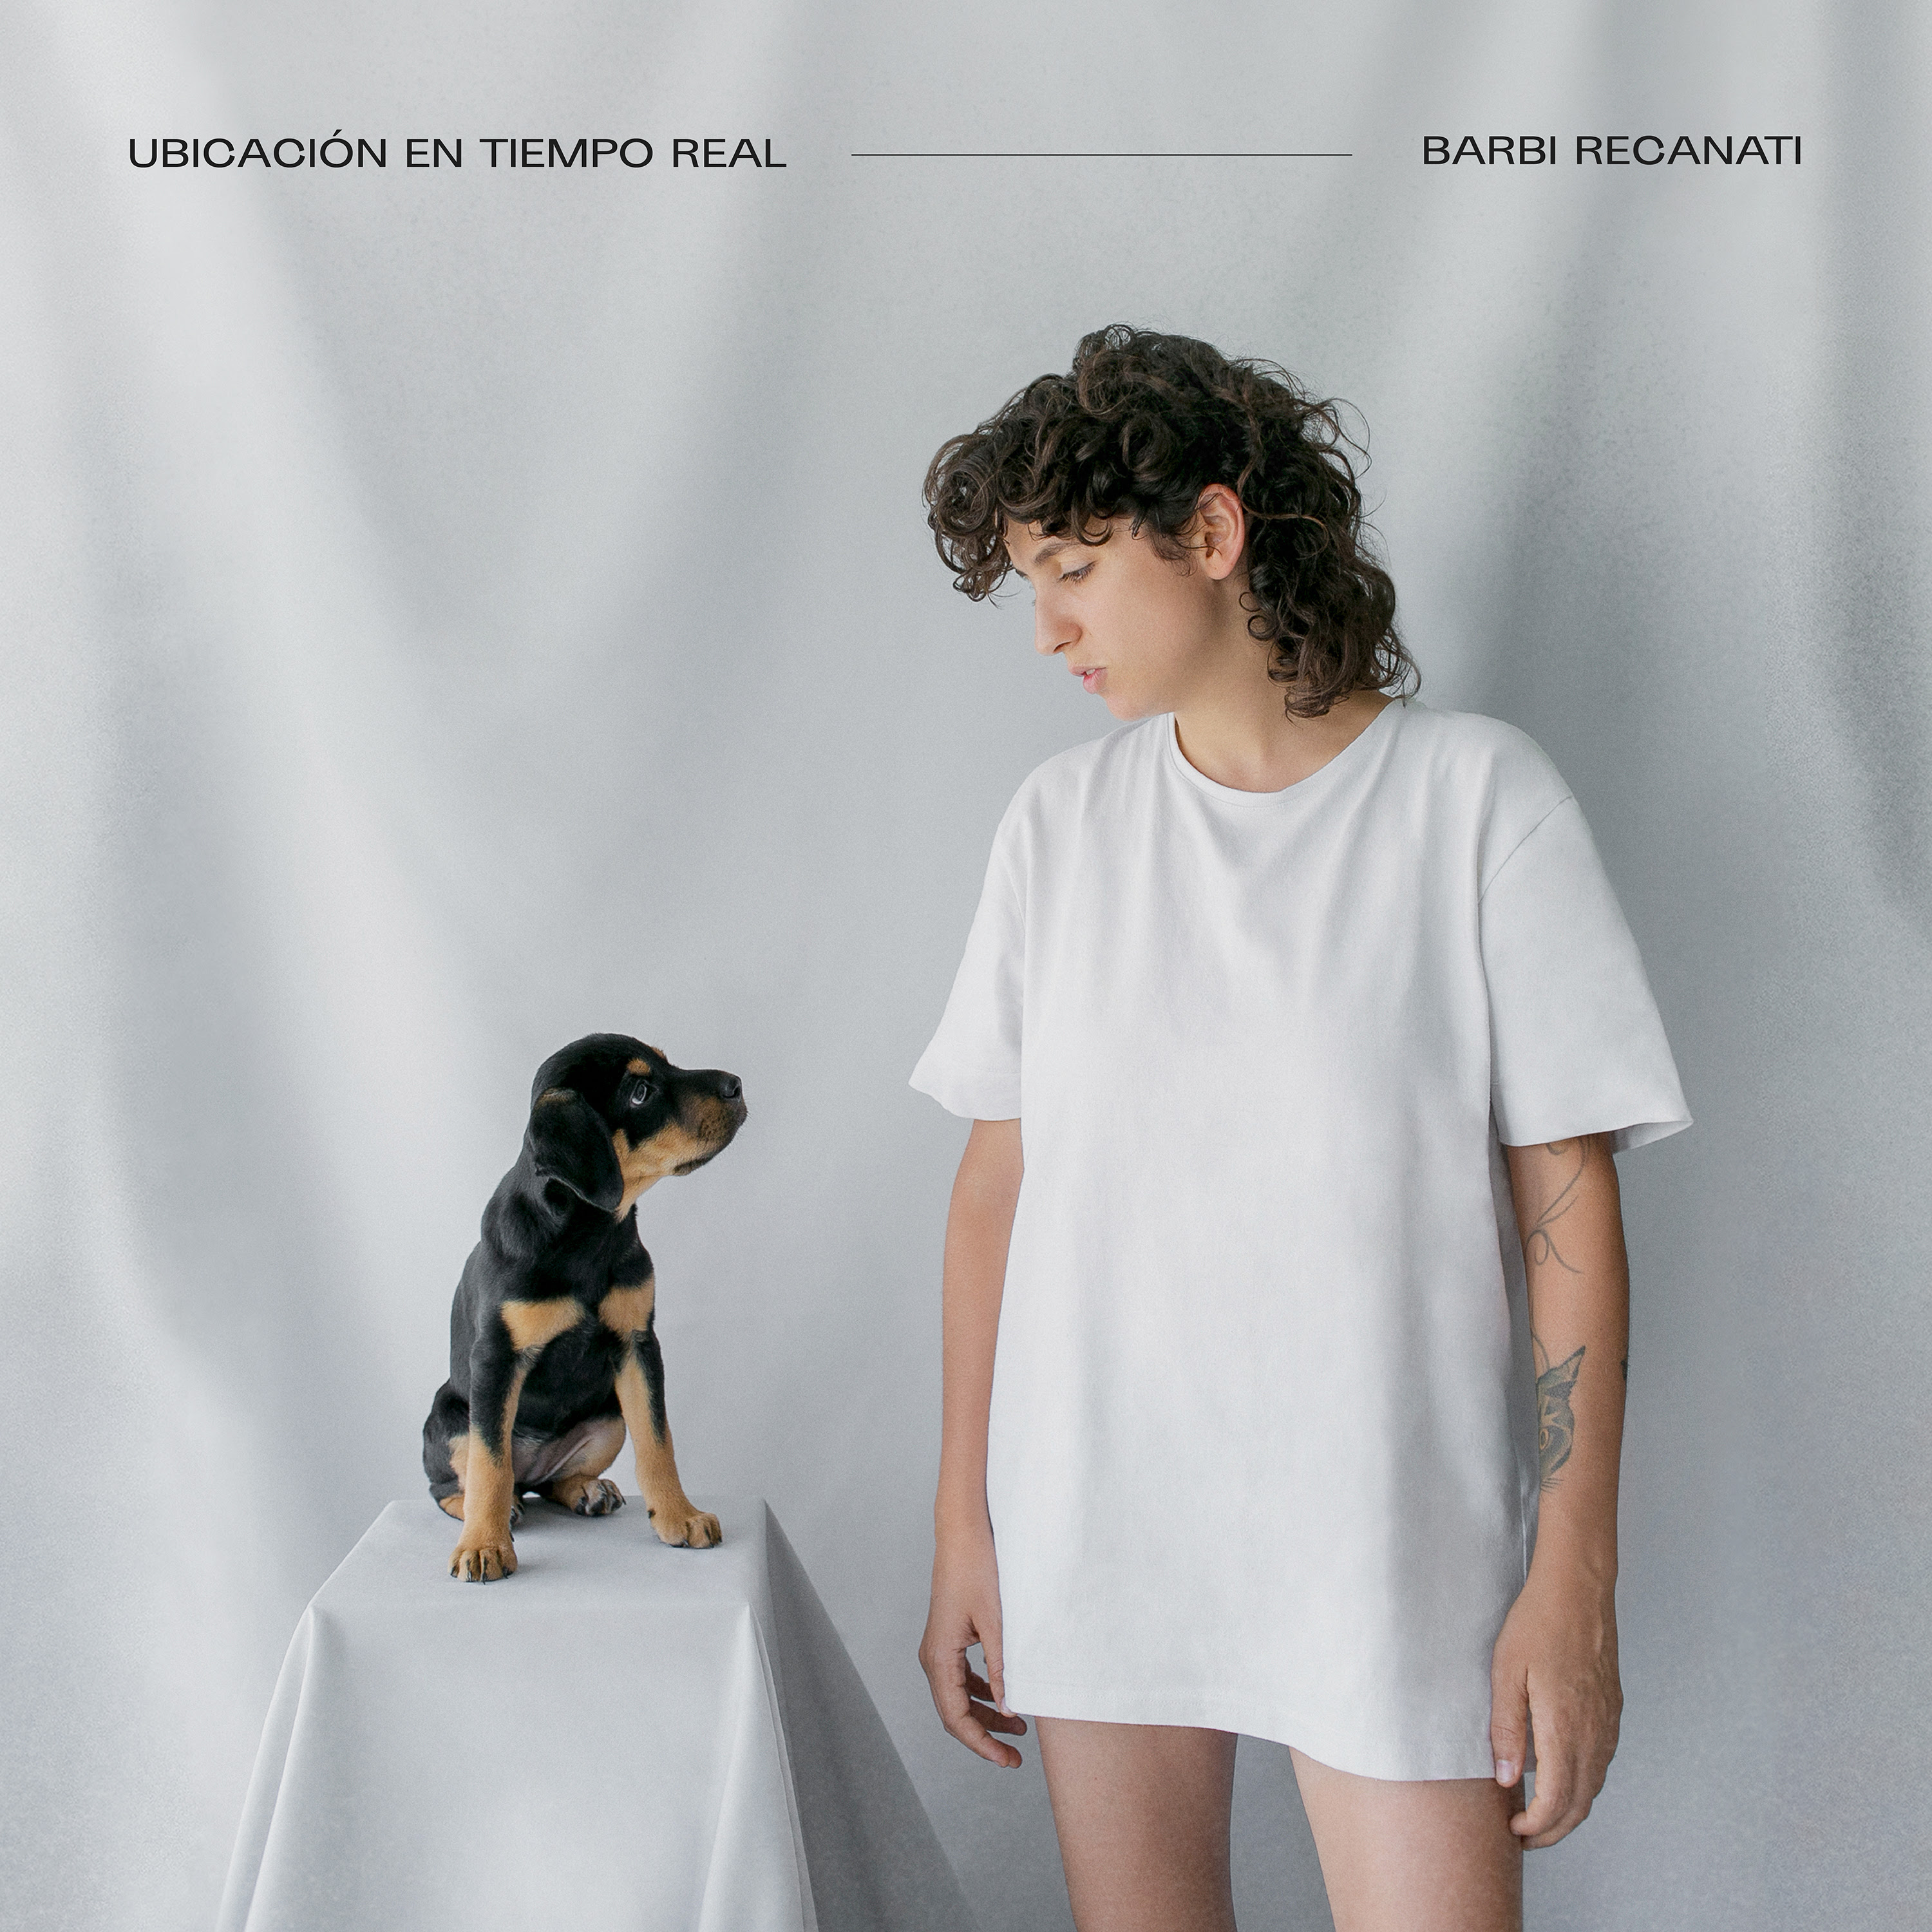 Barbi Recanati presenta su álbum Ubicación en Tiempo Real loqueva